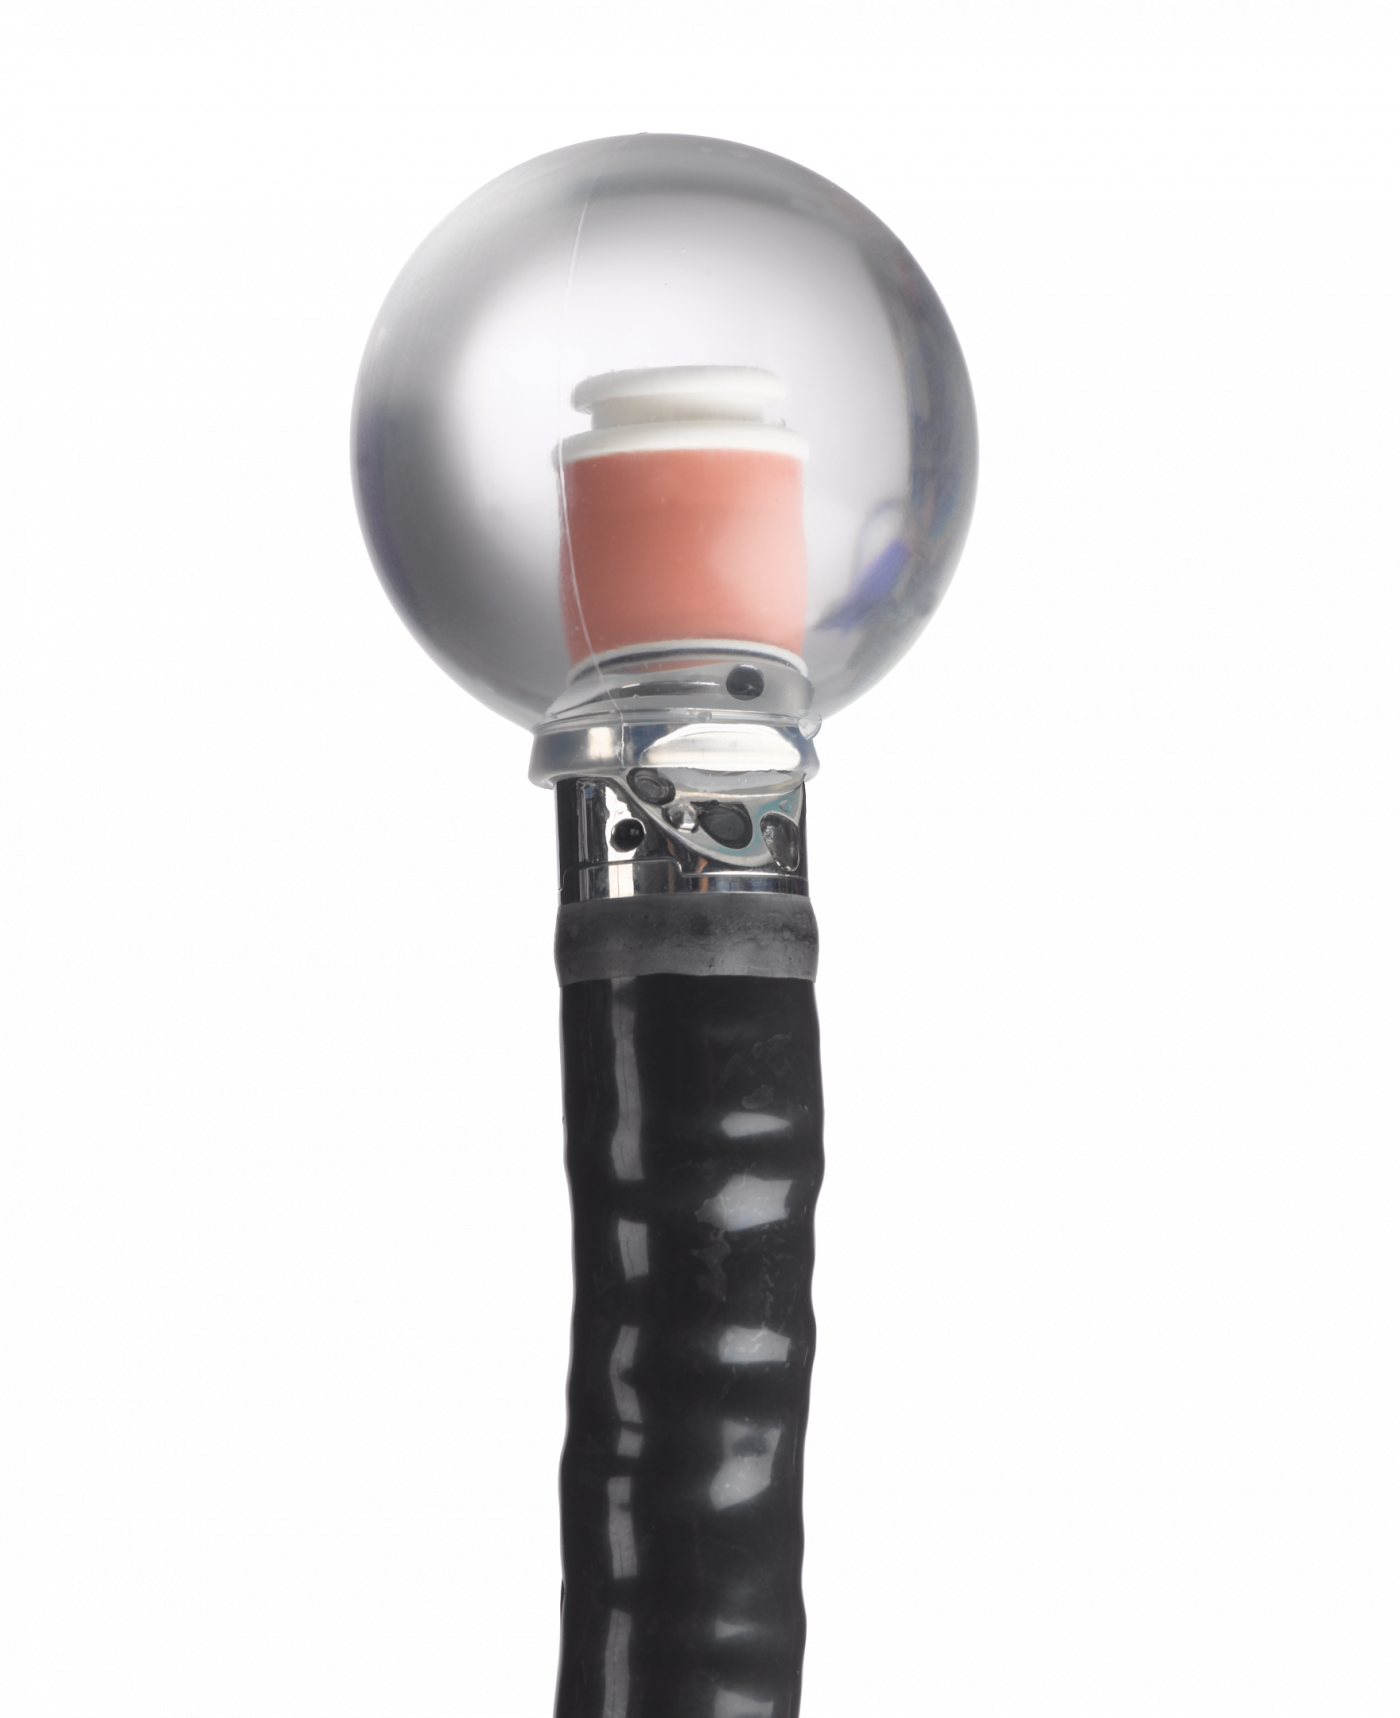 Ballonnet d'écho-endoscopie Oracle monté